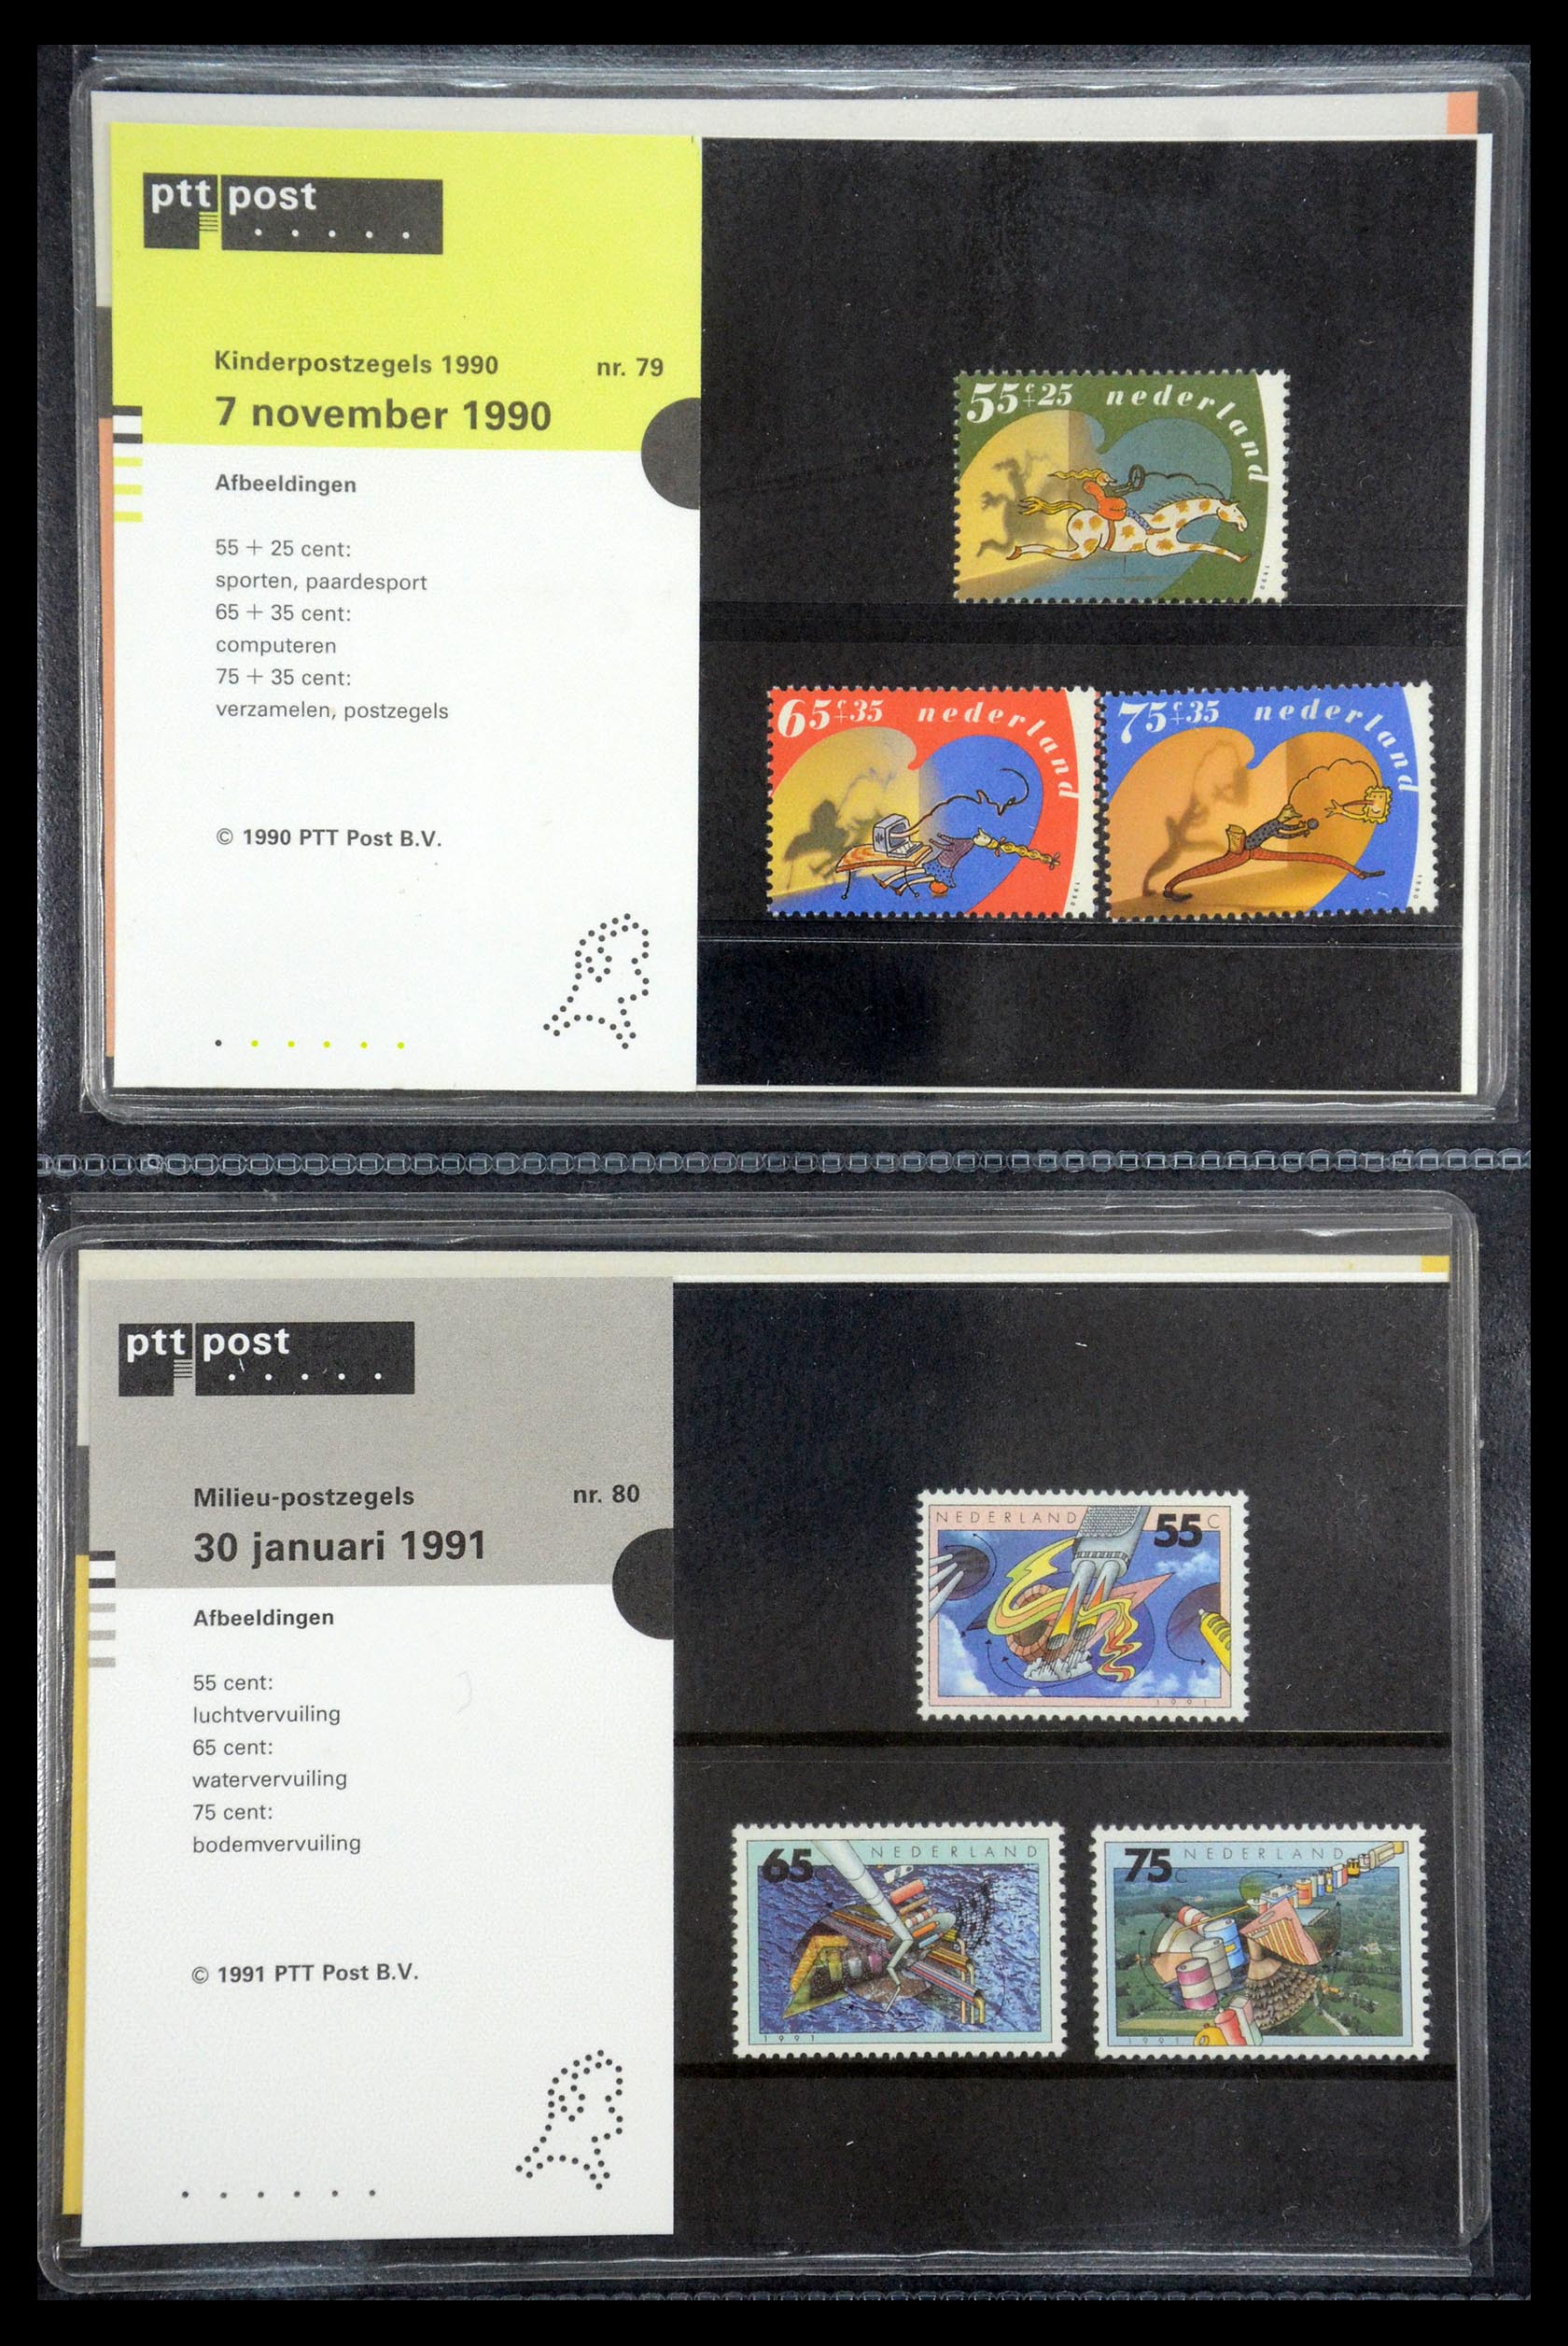 35187 040 - Stamp Collection 35187 Netherlands PTT presentation packs 1982-2019!